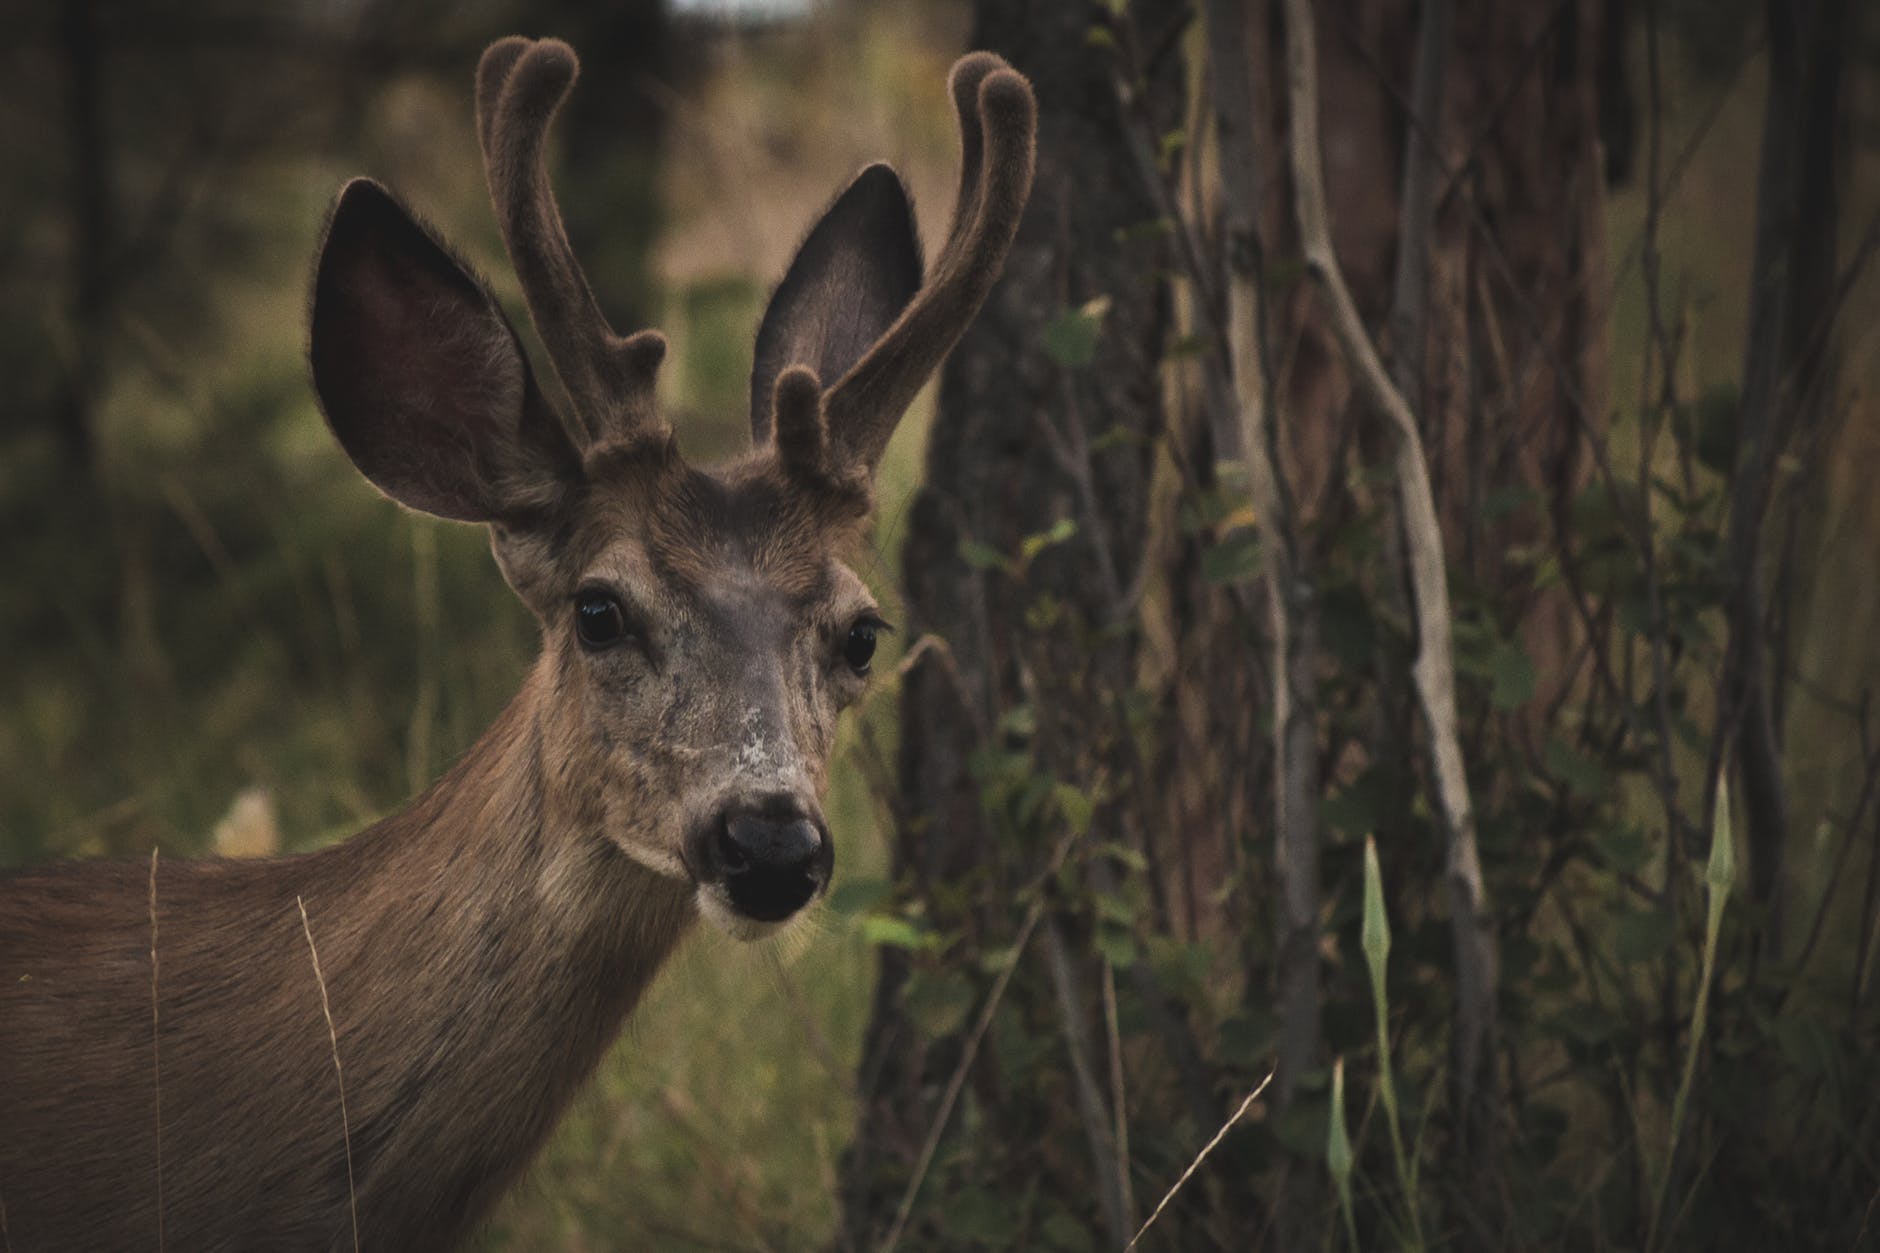 8 Points About Deer Antlers – Georgia Wildlife Blog